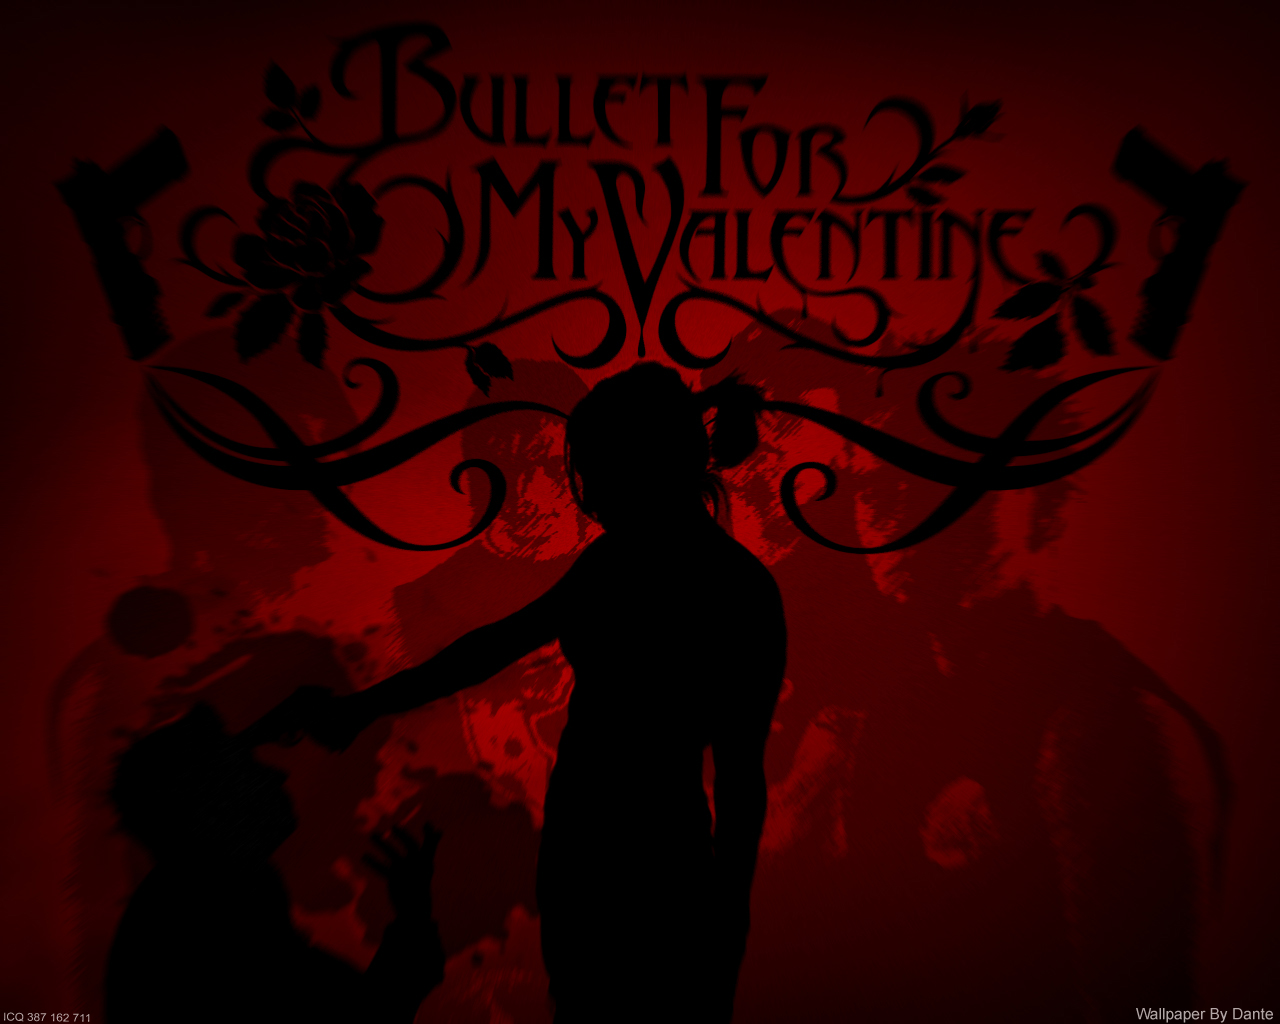 http://4.bp.blogspot.com/-TNfSIrYN-Kg/TpU2daxc6AI/AAAAAAAAGbU/-MsDv294bEQ/s1600/Bullet-For-My-Valentine-80-2.jpg